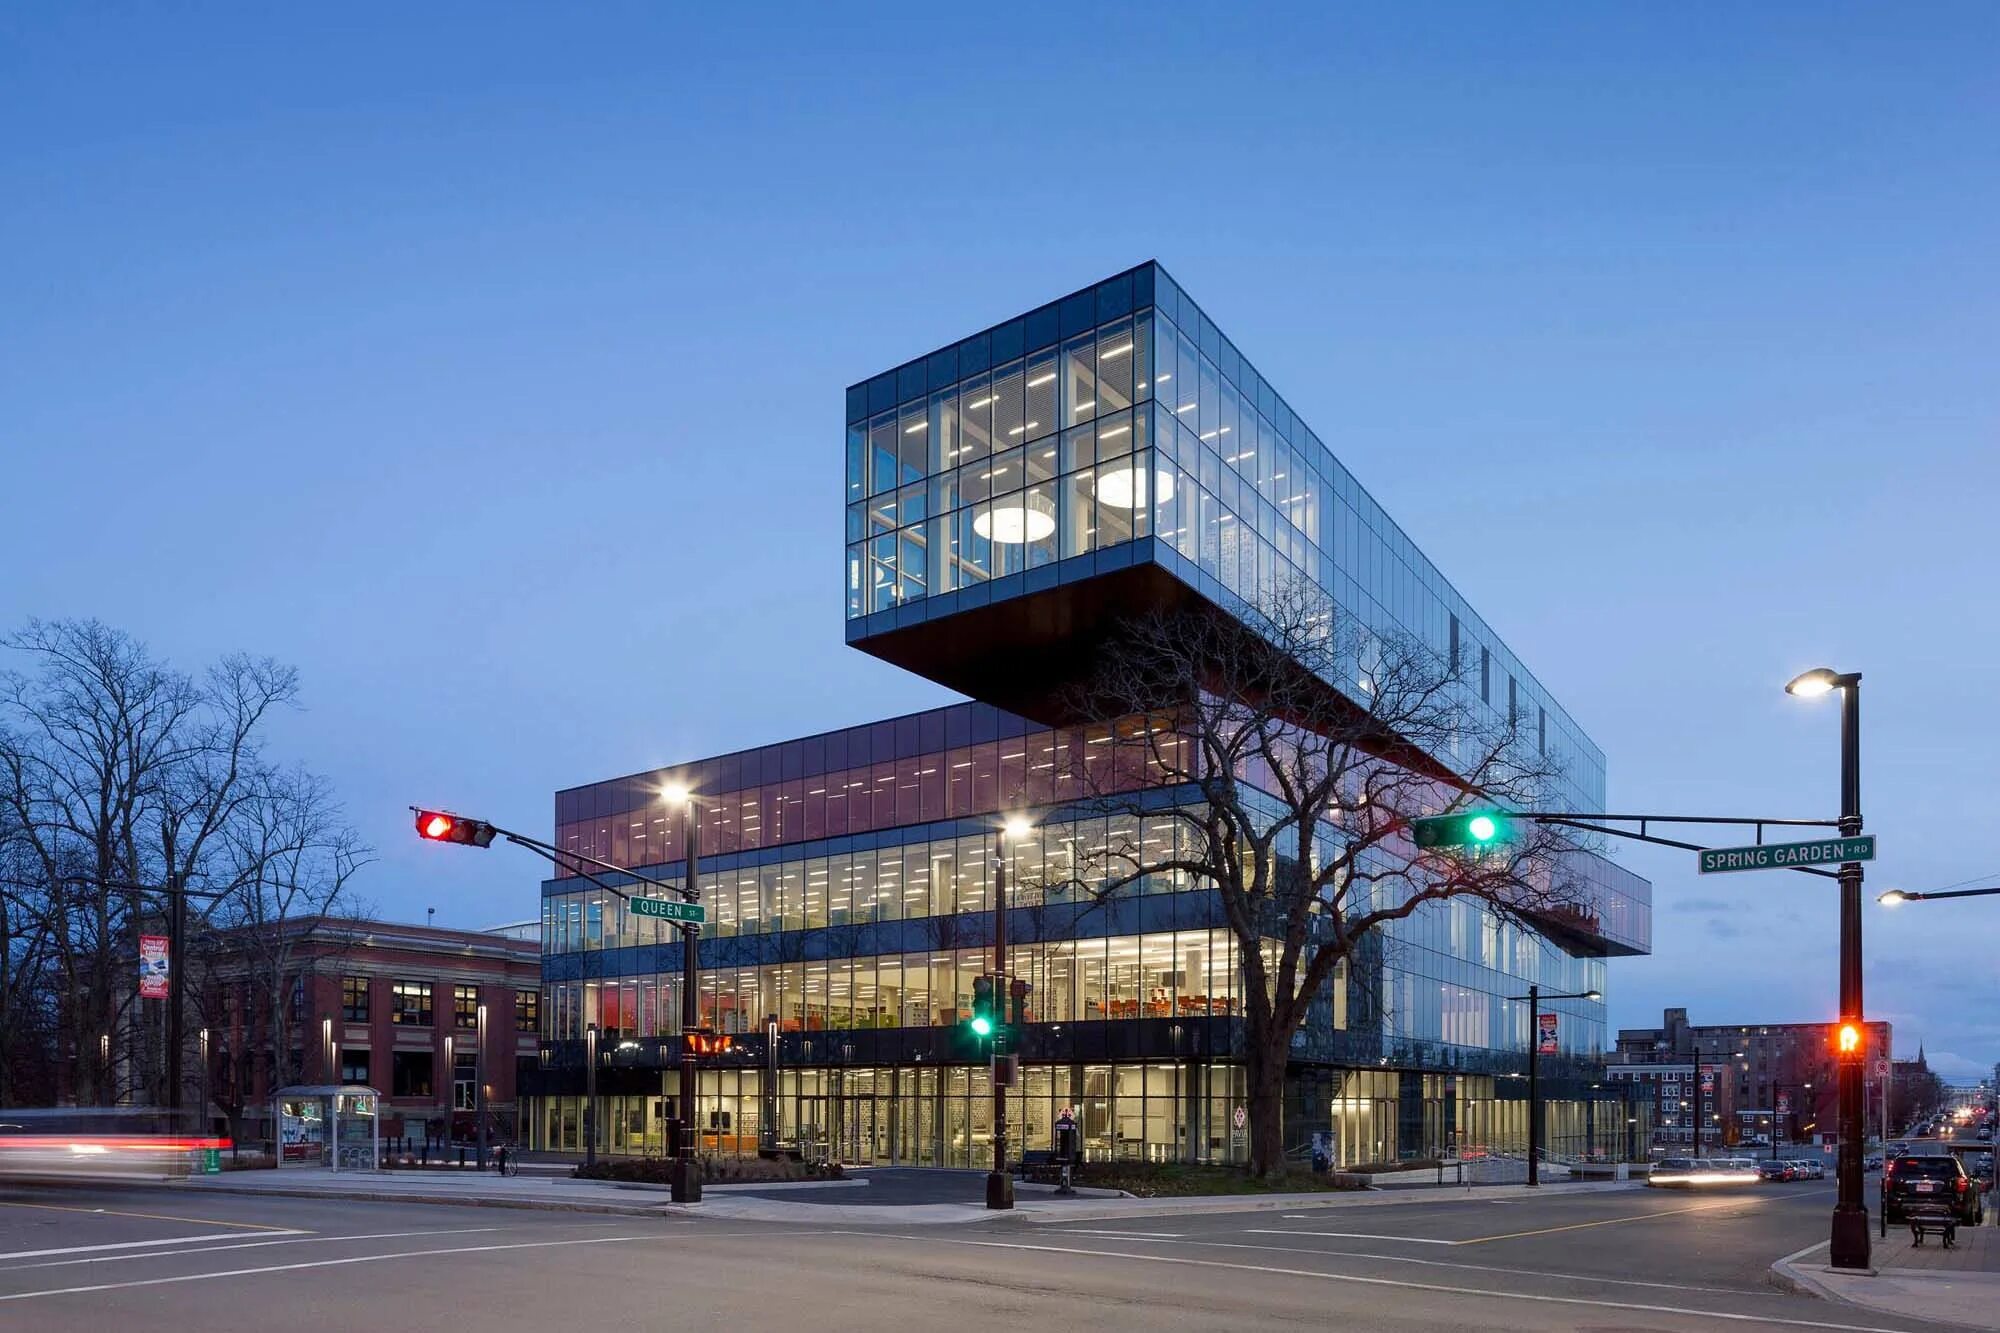 Platform library. Центральная библиотека Галифакса Канада. Библиотека здание. Библиотека со стеклянными фасадами. Платформенная библиотека архитектура.